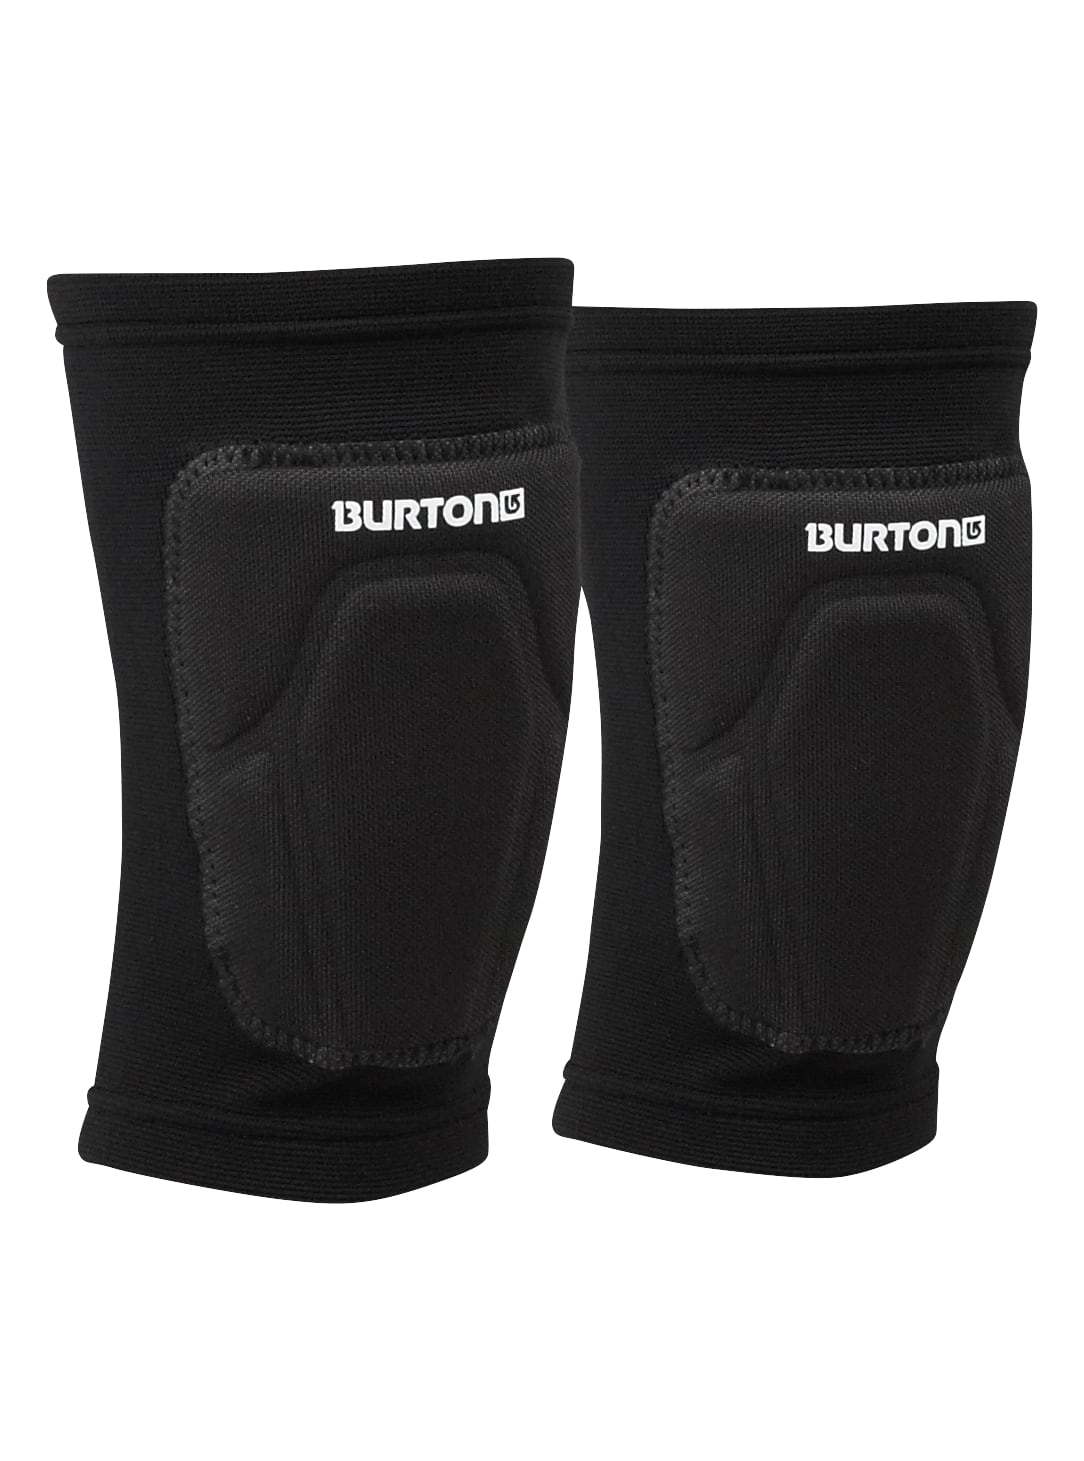 Burton - Protège-genoux basique, True Black, M